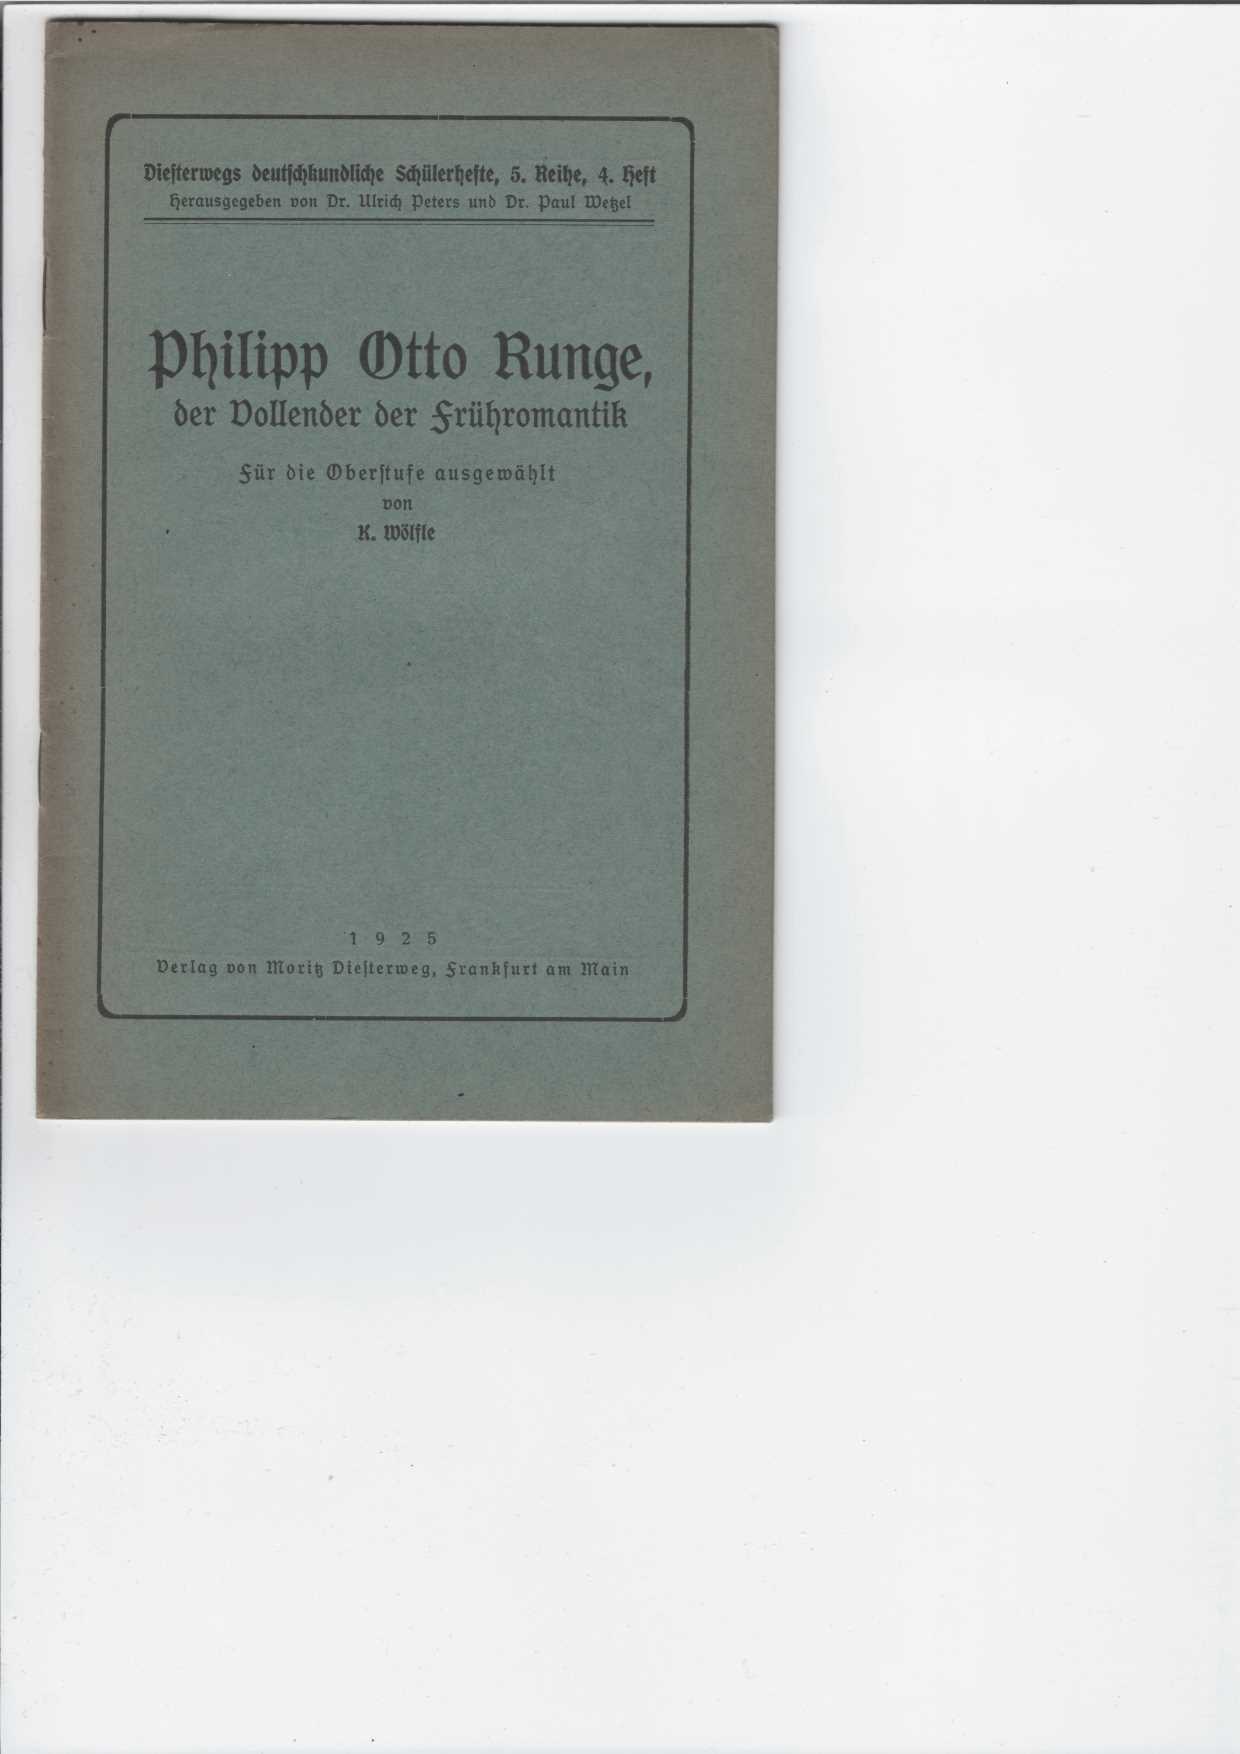 Wlfle, K.:  Philipp Otto Runge, der Vollender der Frhromantik. 